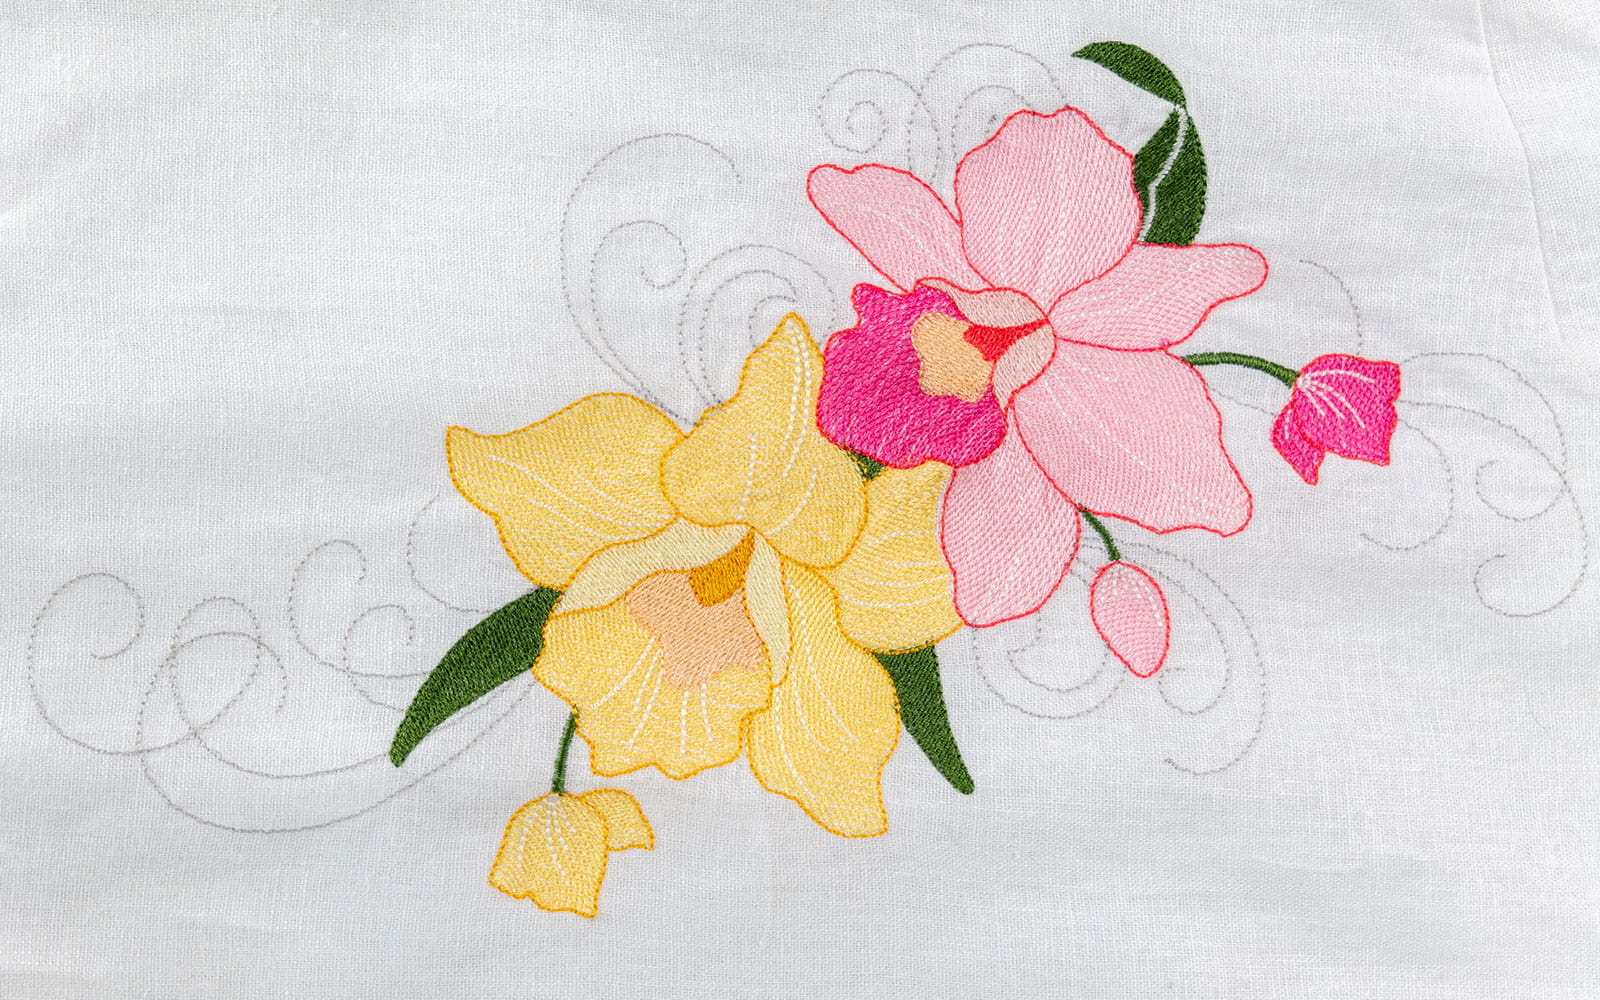 Nahaufnahme rosa - gelb Orchidee auf  Brust des weißen Kleides gestickt